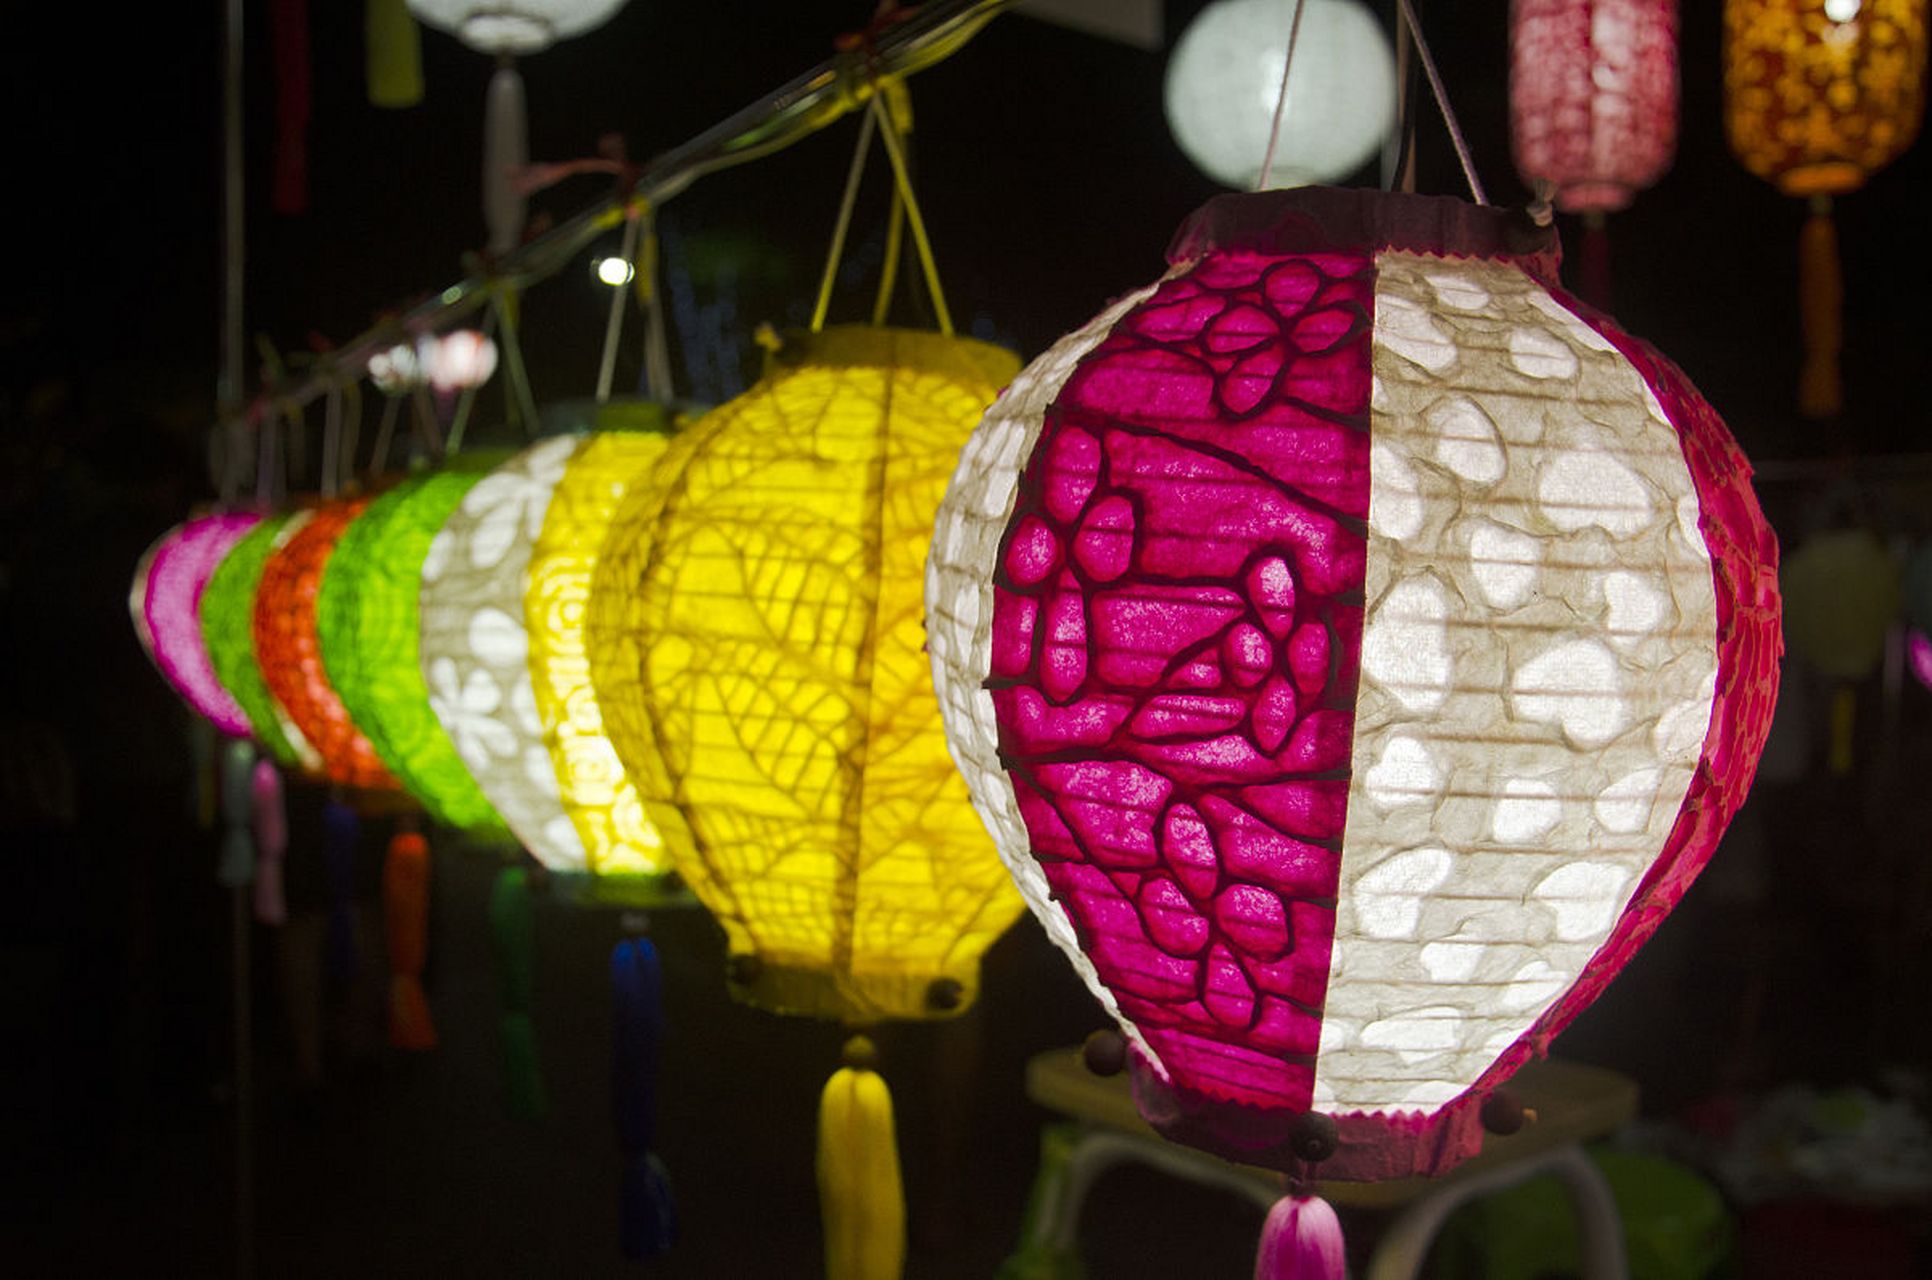 花灯作为中国传统文化象征,种类繁多,各具特色